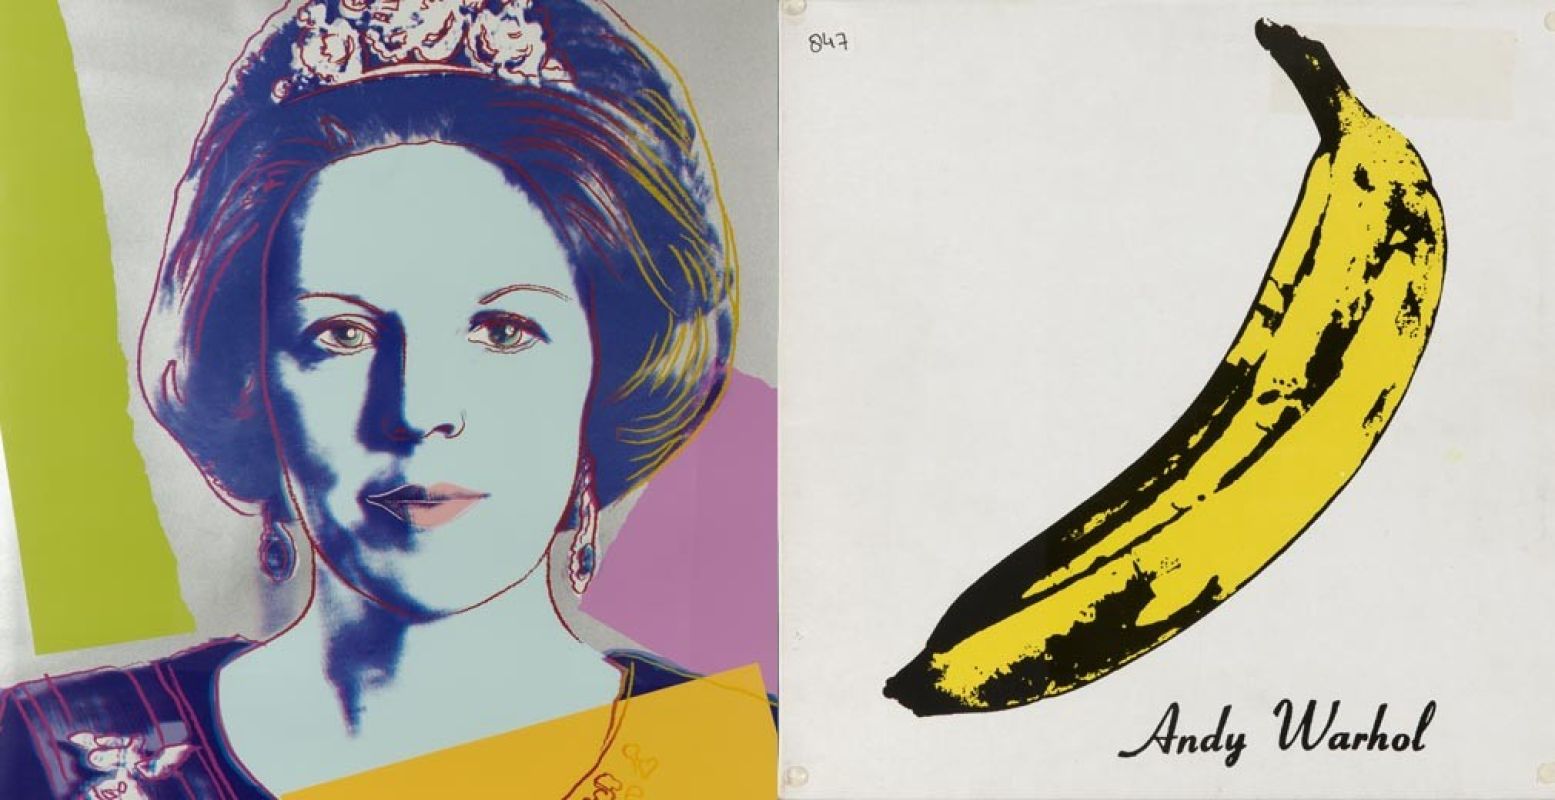 Links: Queen Beatrix, Andy Warhol. Rechts: Velvet Underground, Andy Warhol. Photo credit: Carol Winkel